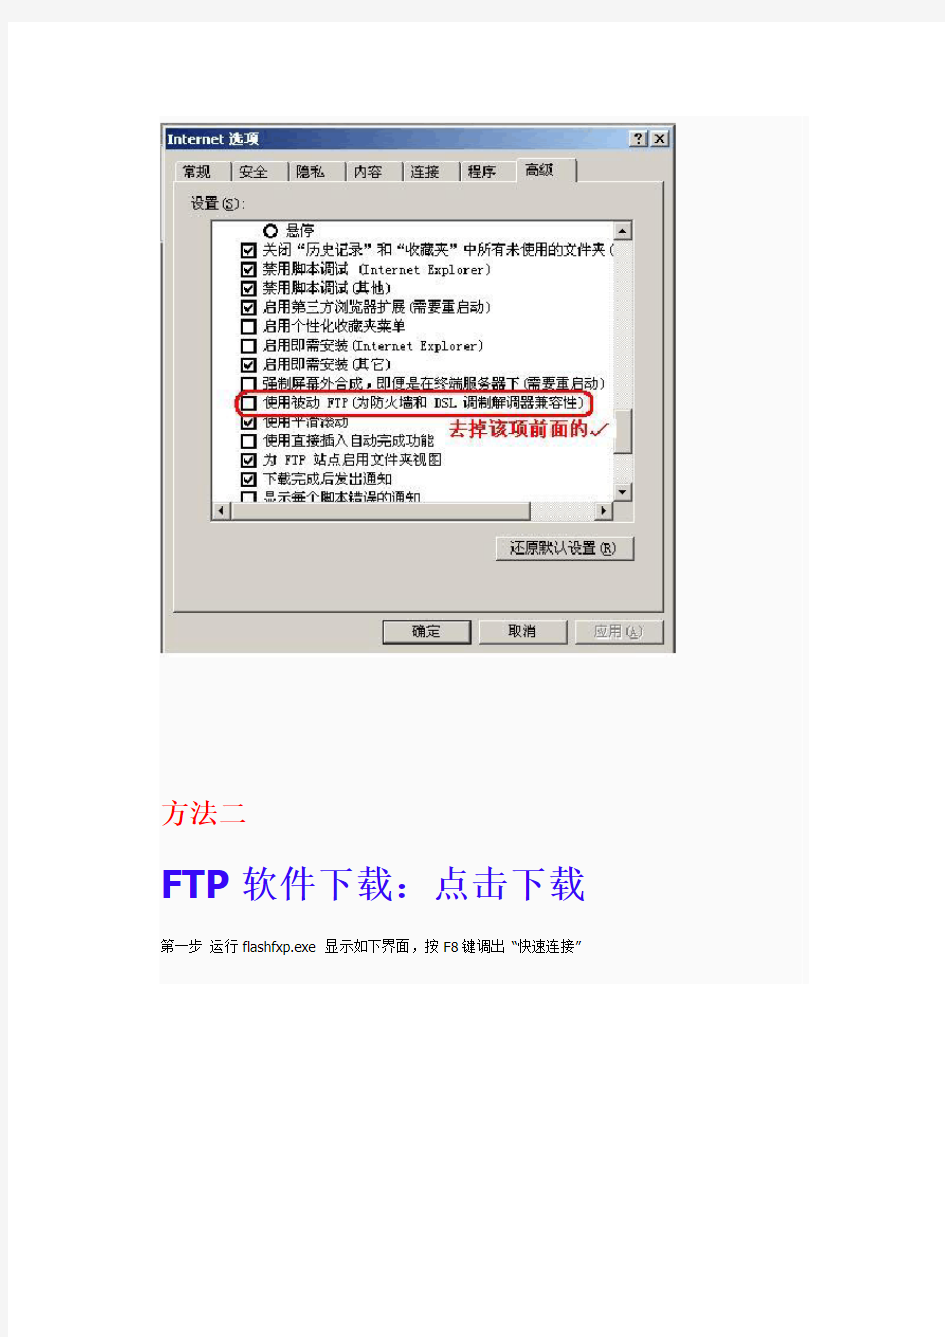 FTP上传文件步骤